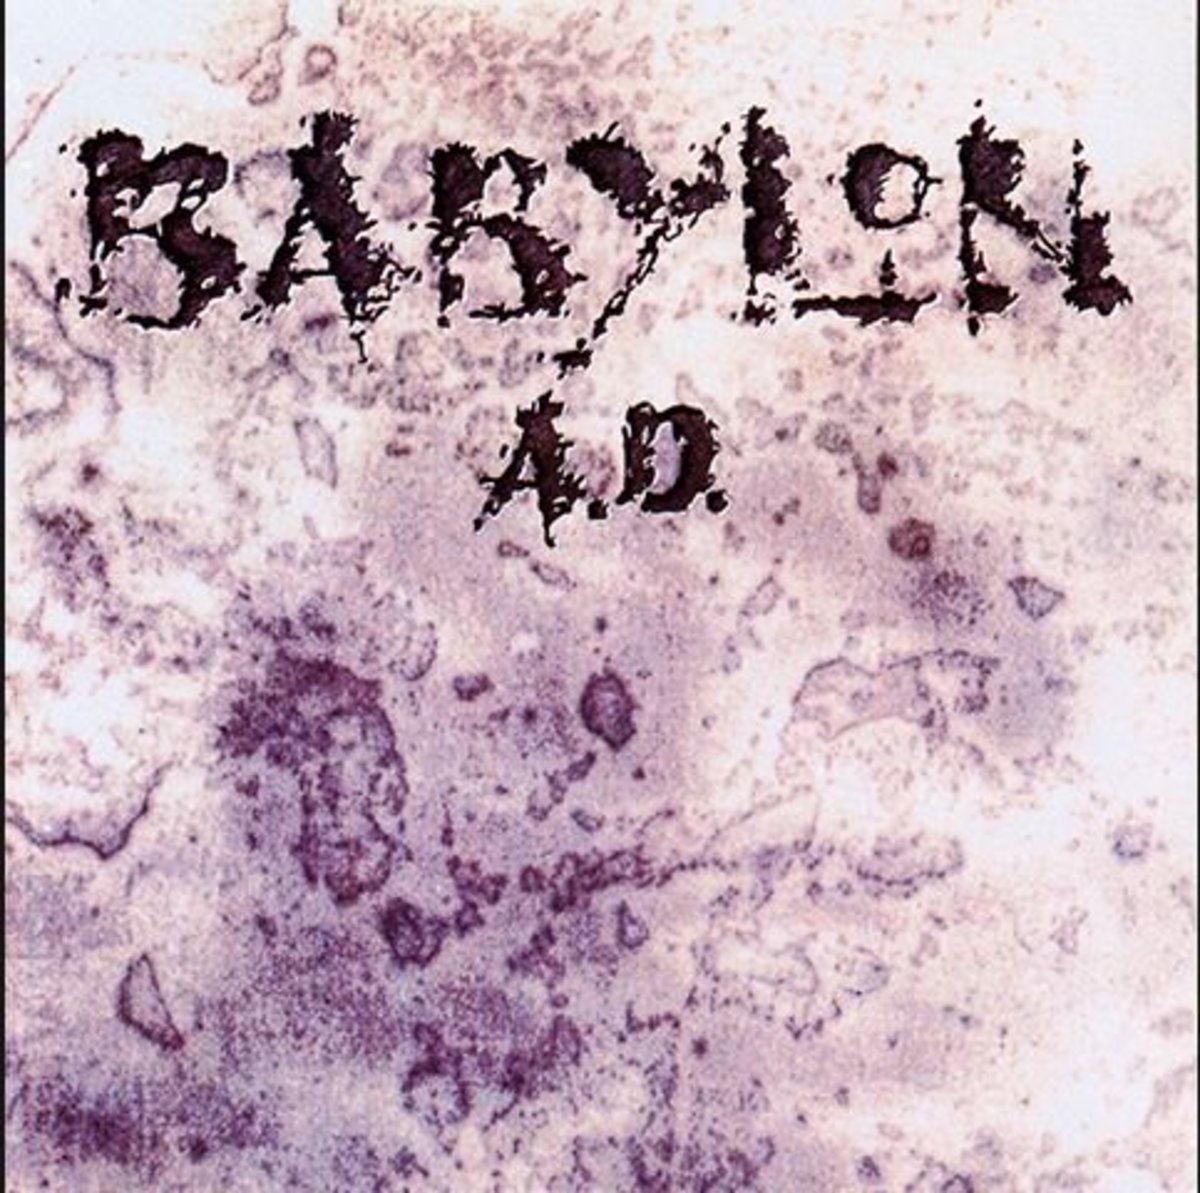 Album Art for "Babylon A.D."